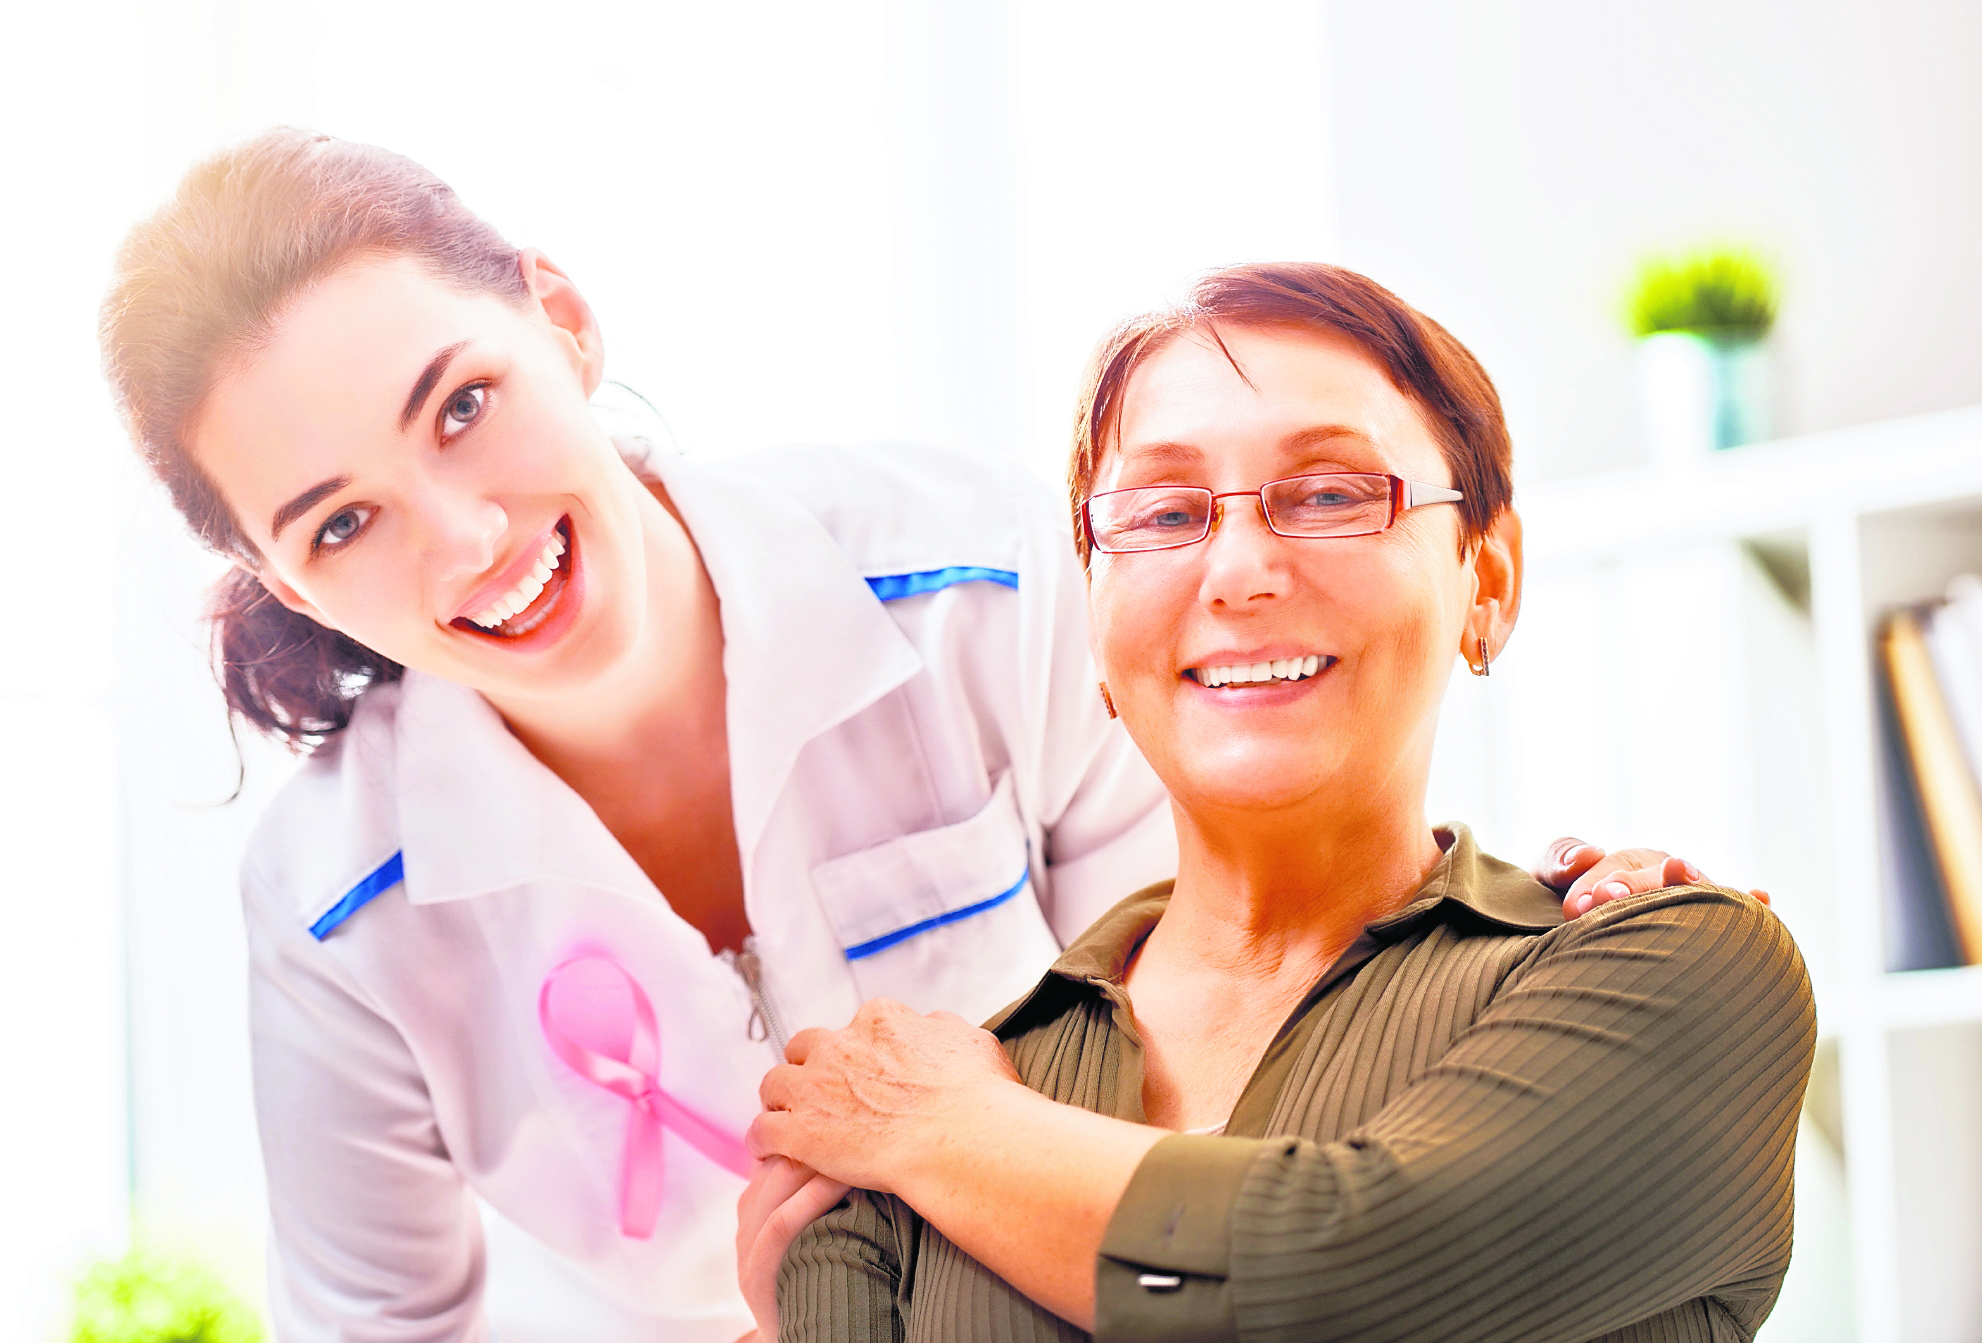 El cáncer de mama debe ser detectado a tiempo para que haya más posibilidad de no recibir un diagnostico fatalista. (Foto Prensa Libre: Shutterstock).